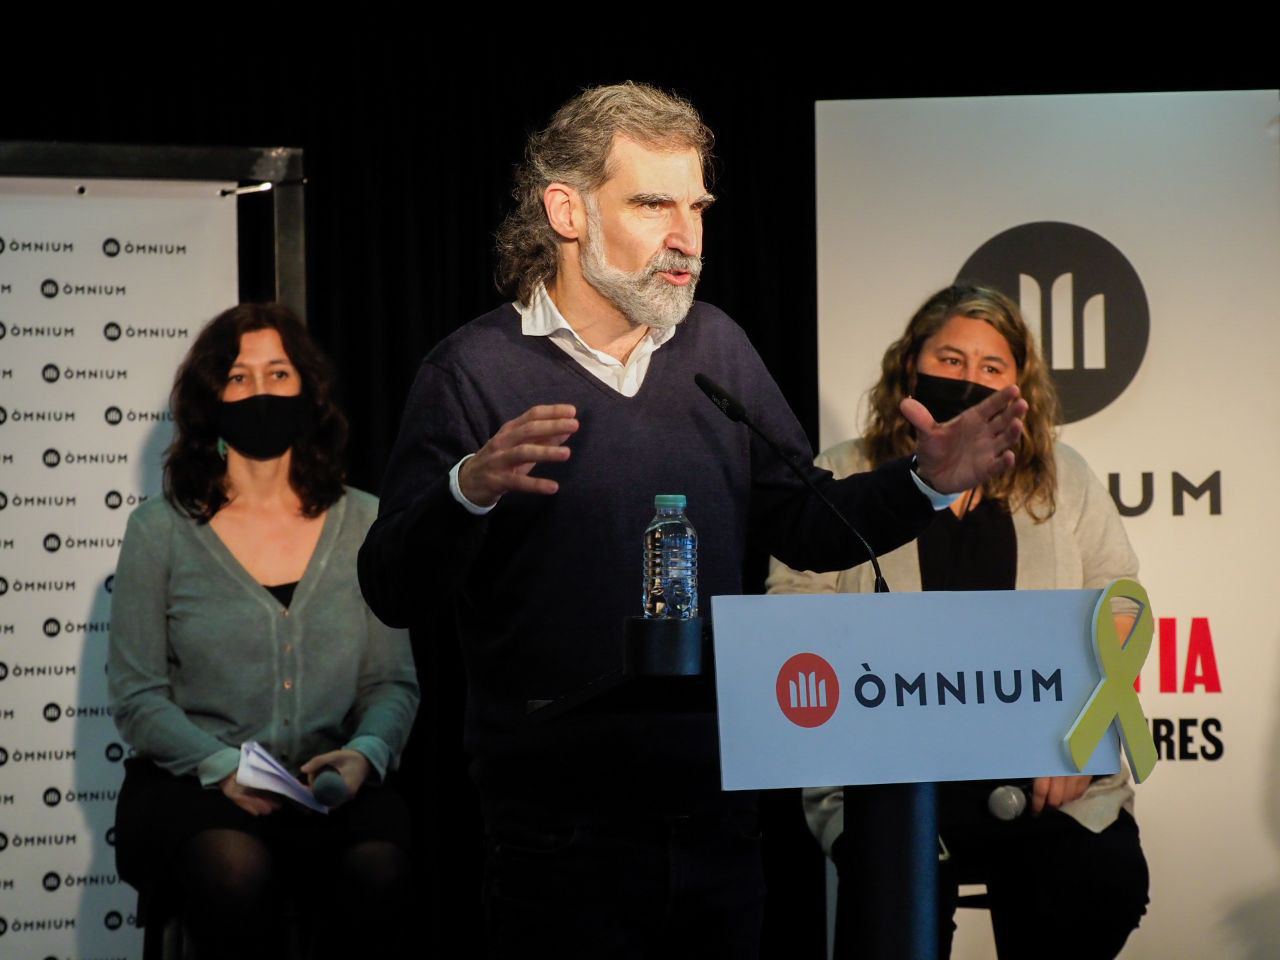 Òmnium denuncia una segona onada de judicis polítics contra independentistes